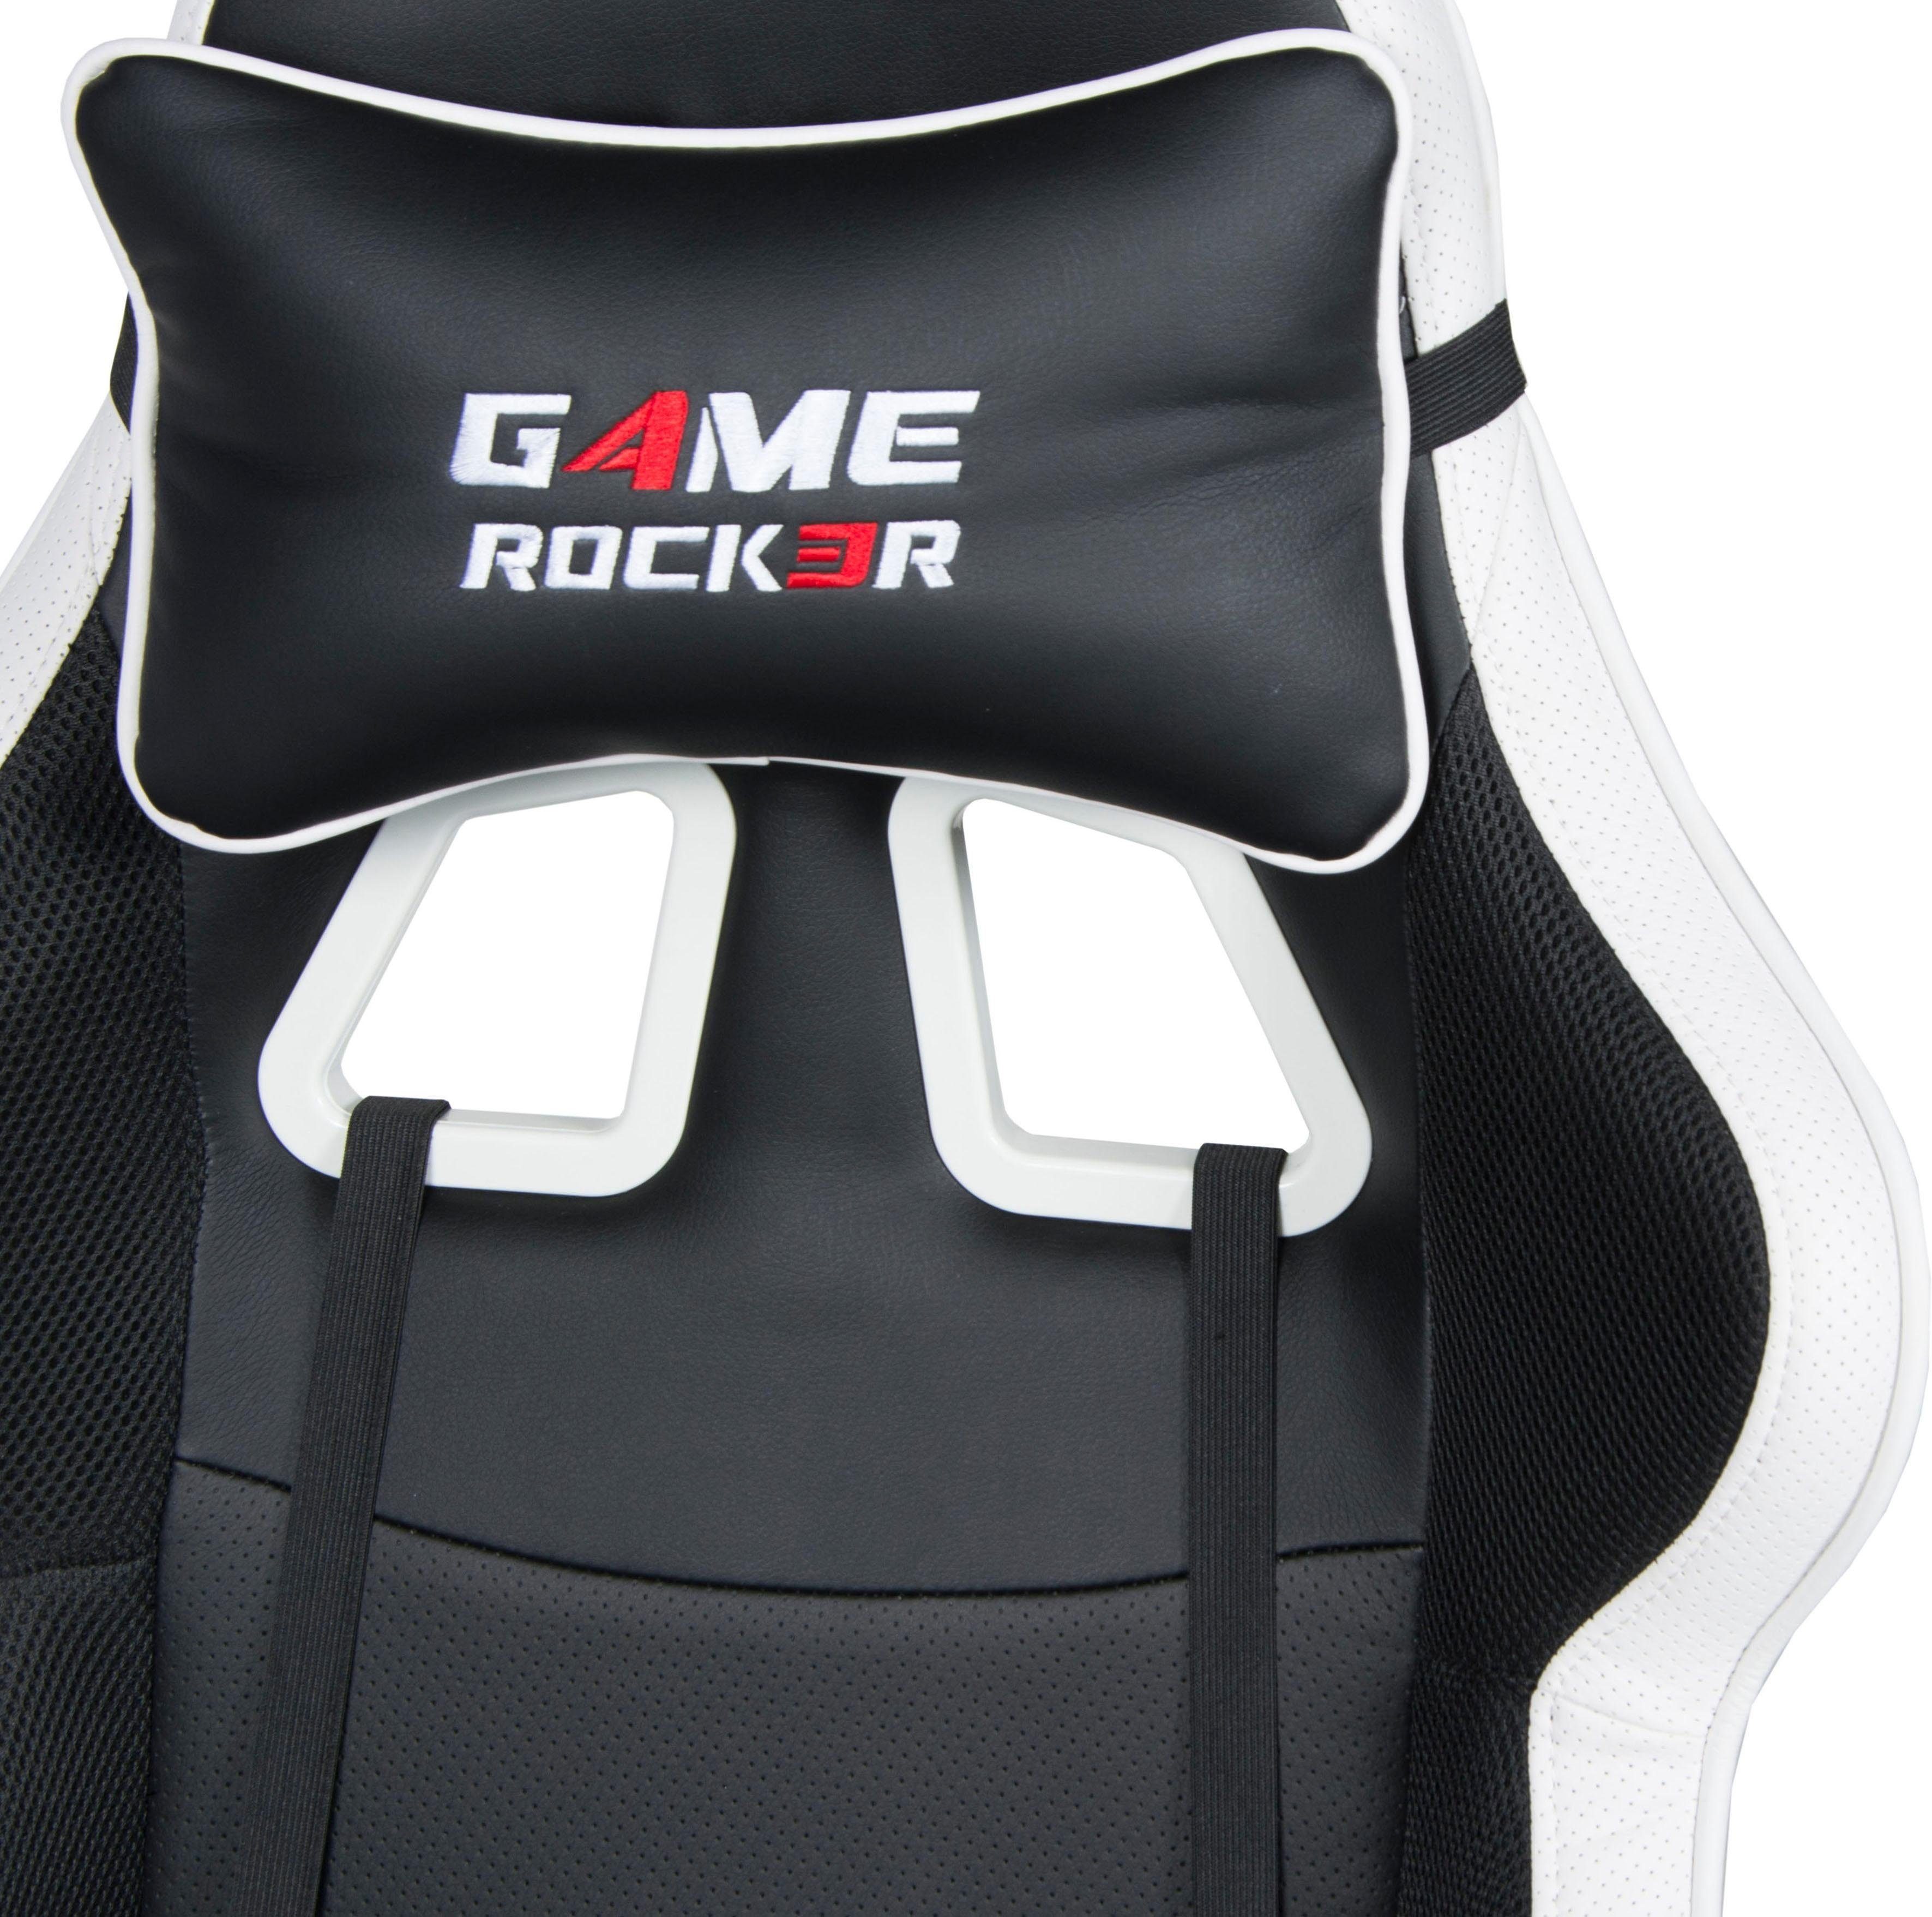 G-10 schwarz/weiß schwarz/weiß | Collection Gaming-Stuhl Game-Rocker Duo